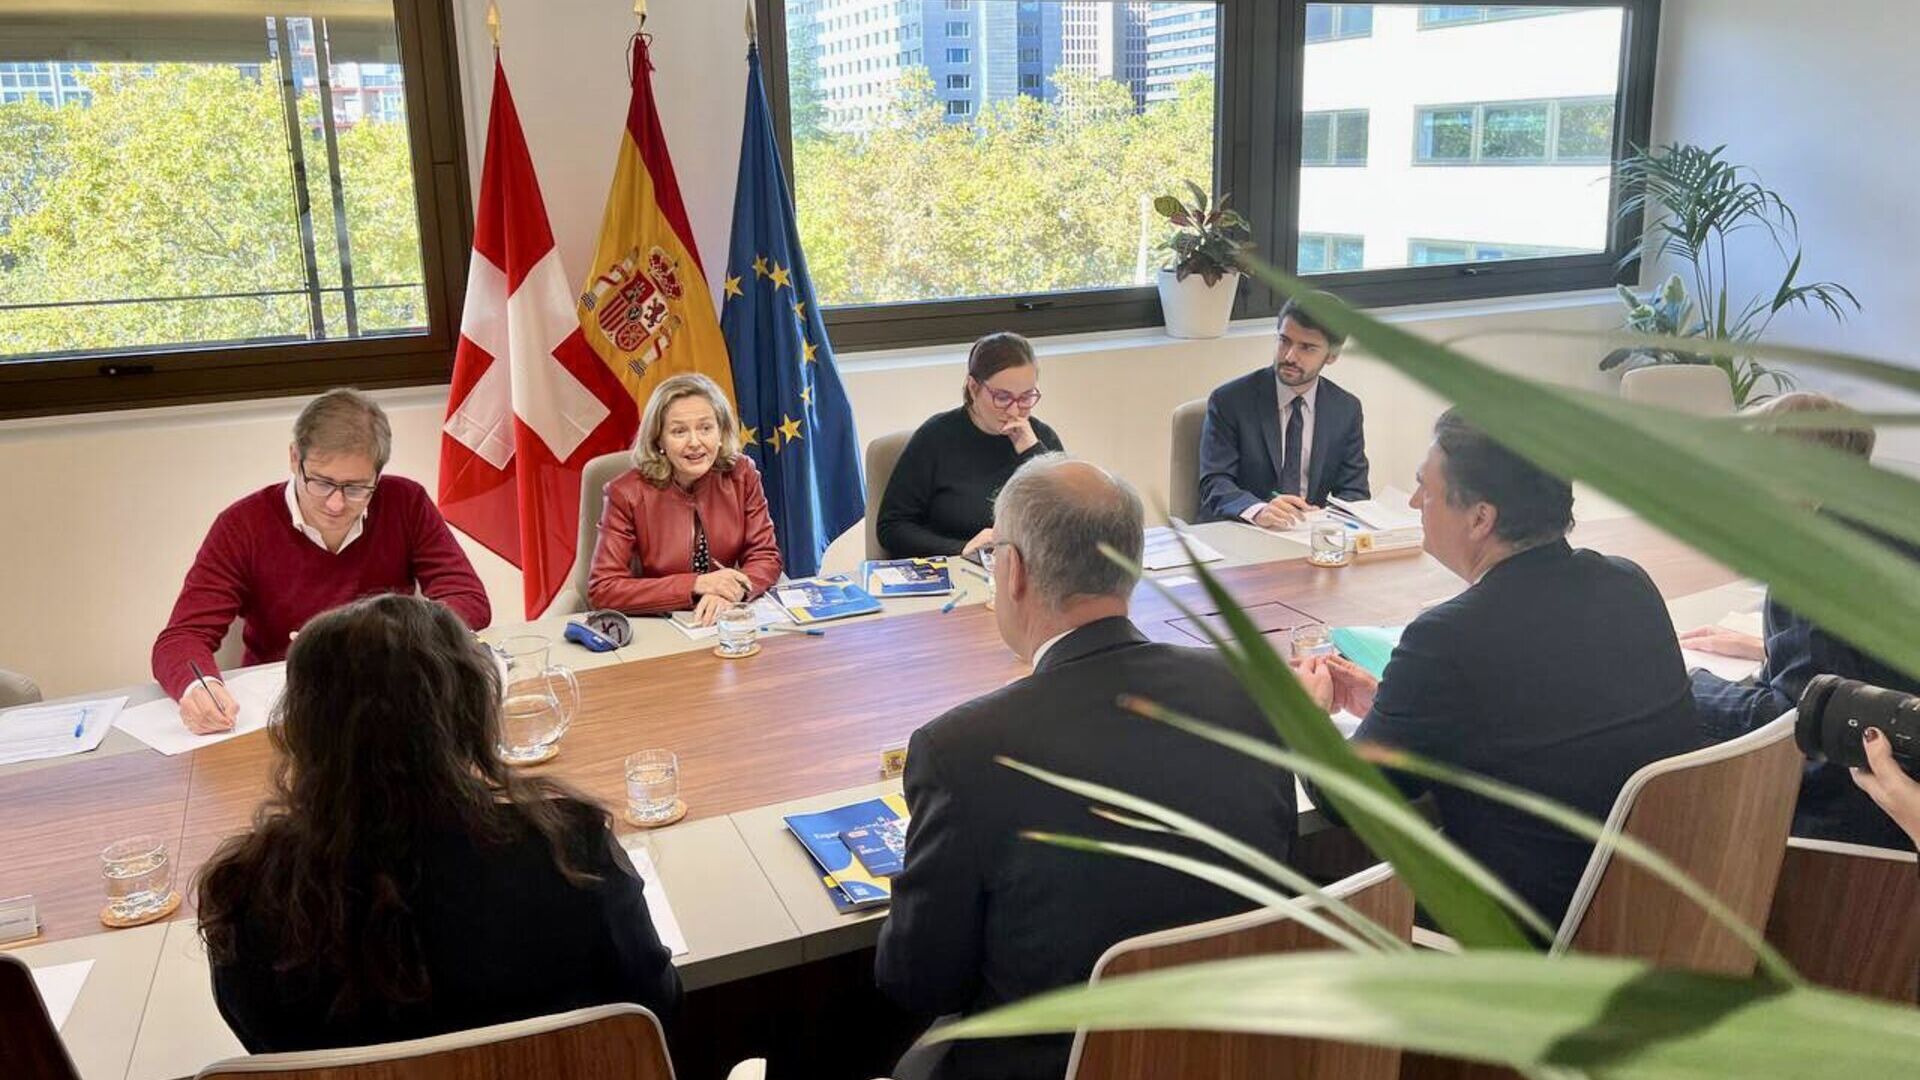 Incontro fra le delegazioni svizzera e spagnola a Madrid il 10 e 11 novembre 2022